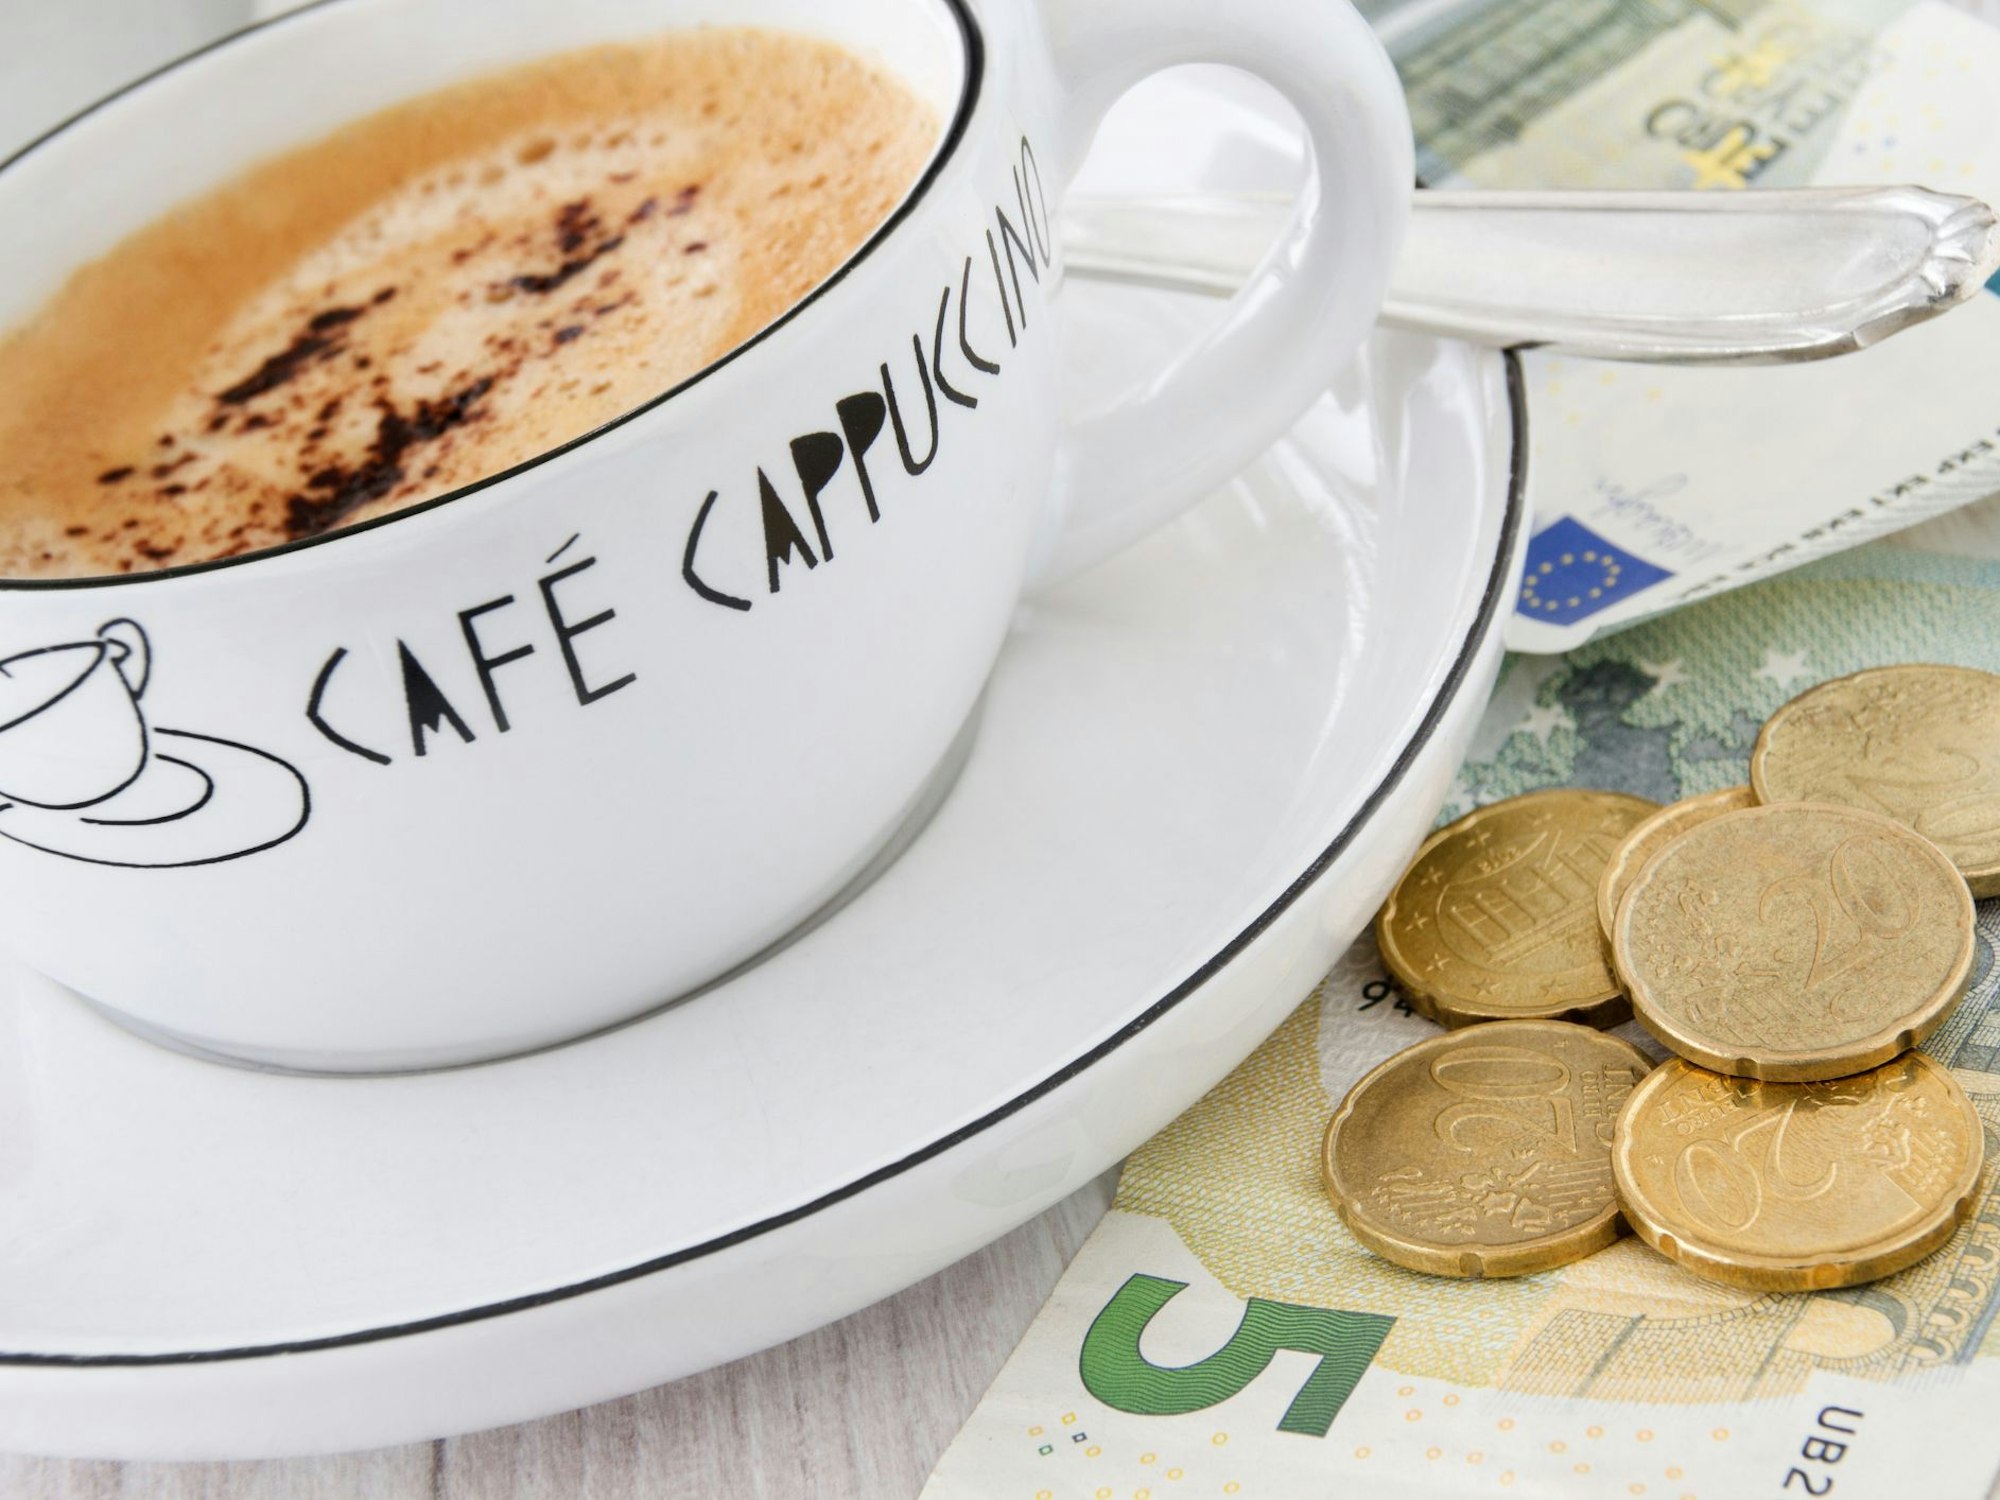 Kaffeetasse mit Trinkgeld